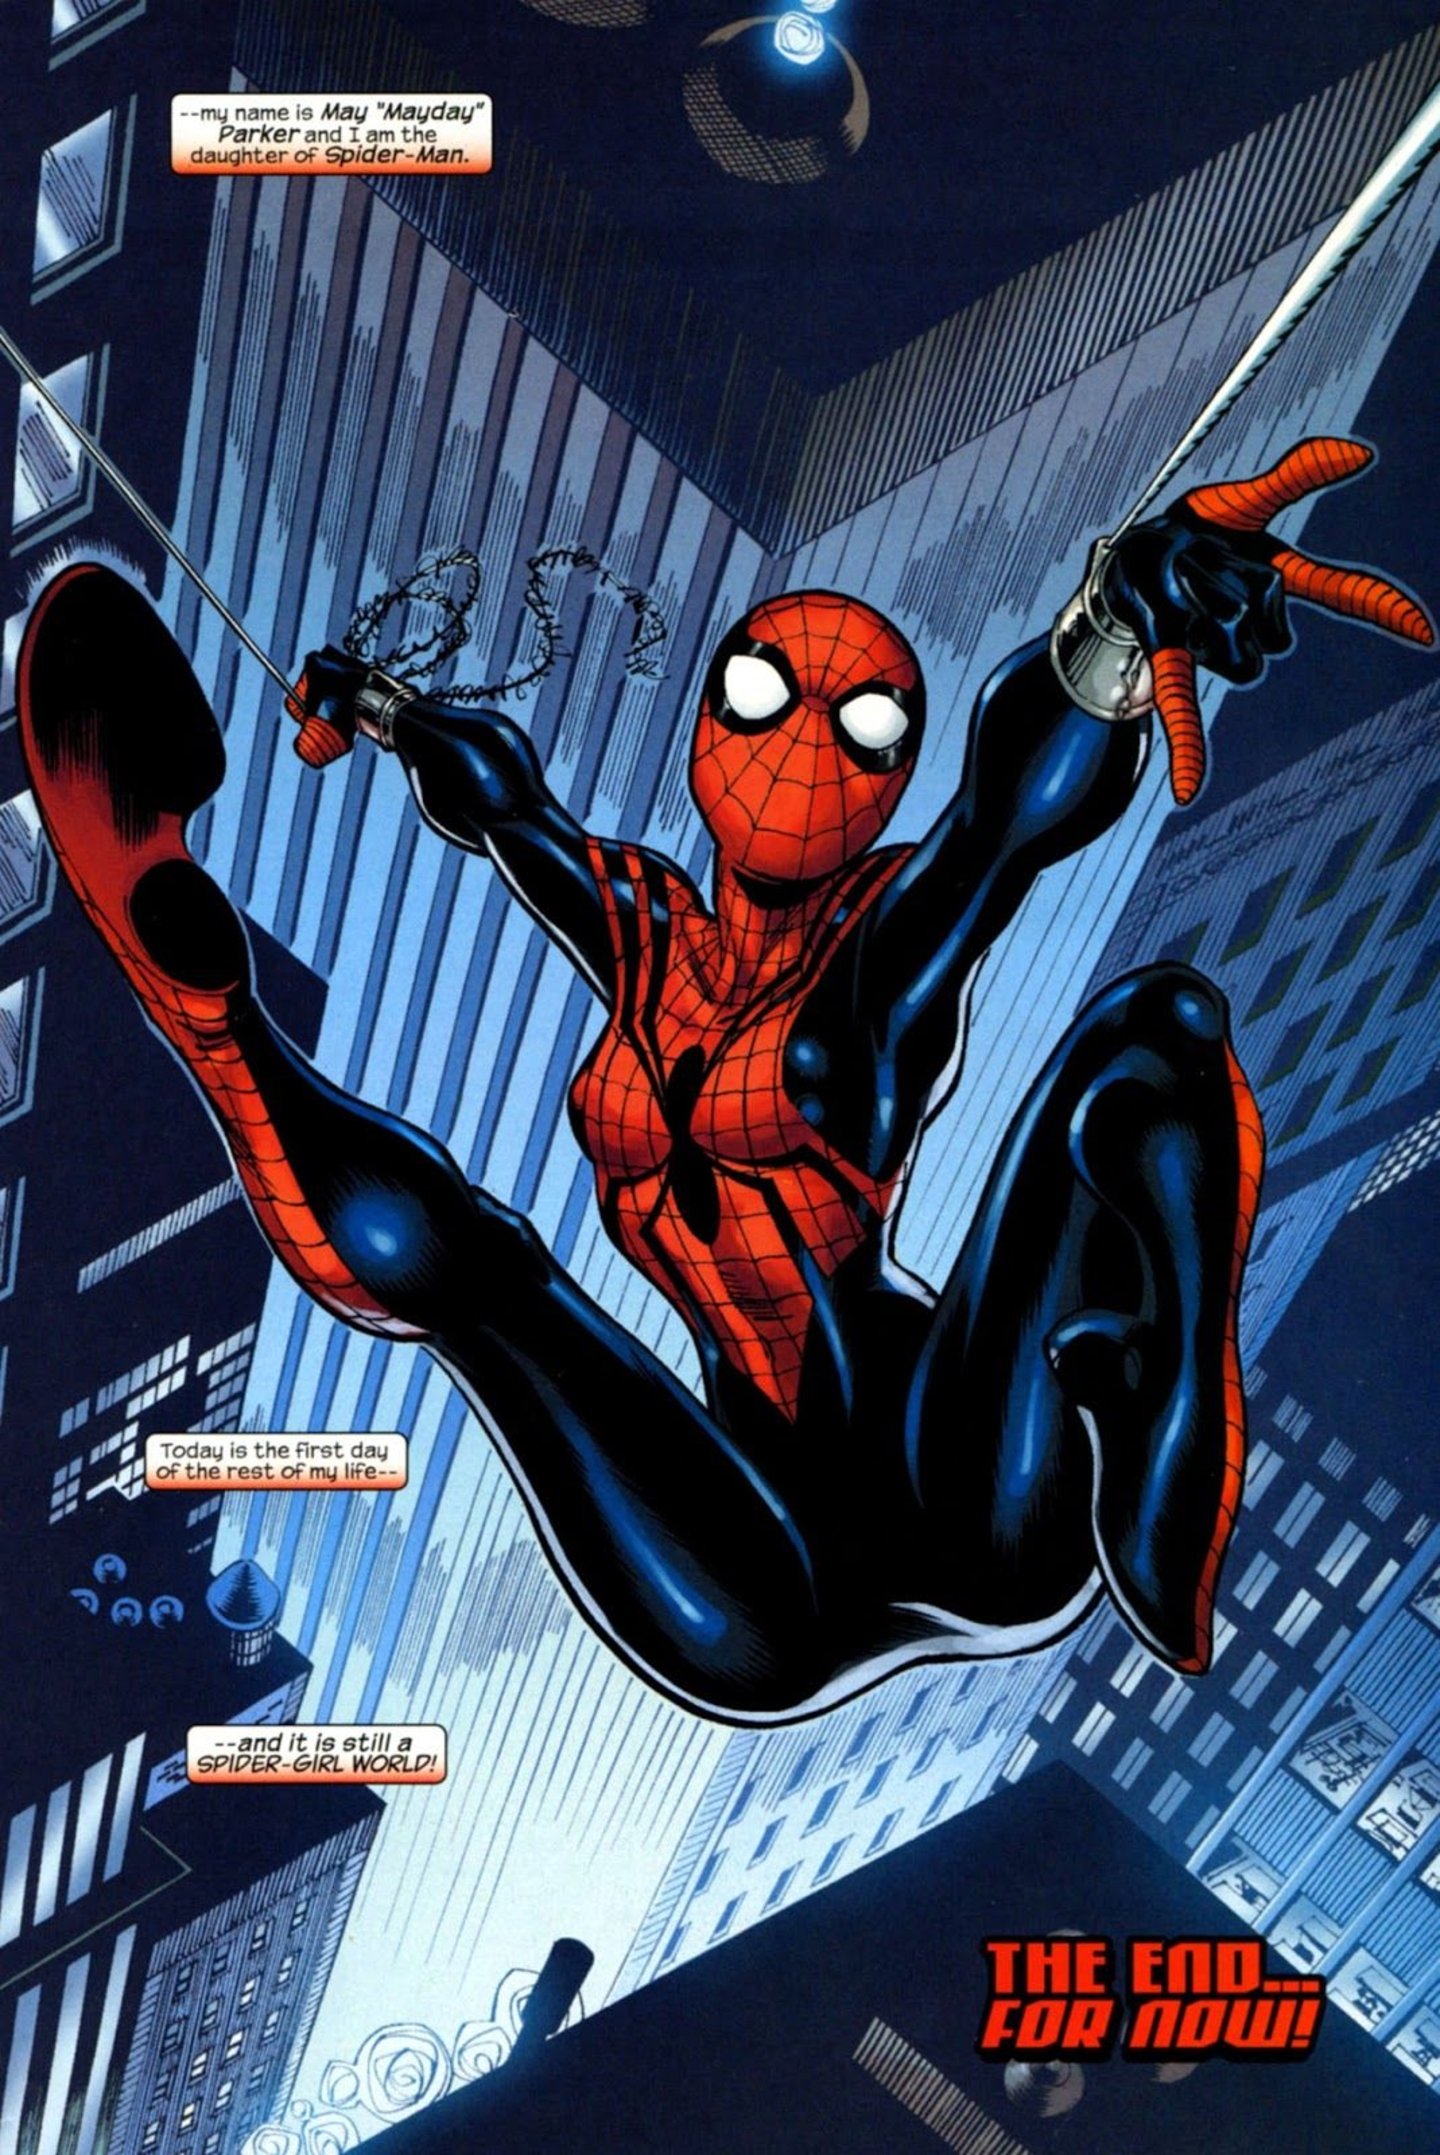 Personajes que se convirtieron en Spider-Man además de Peter Parker